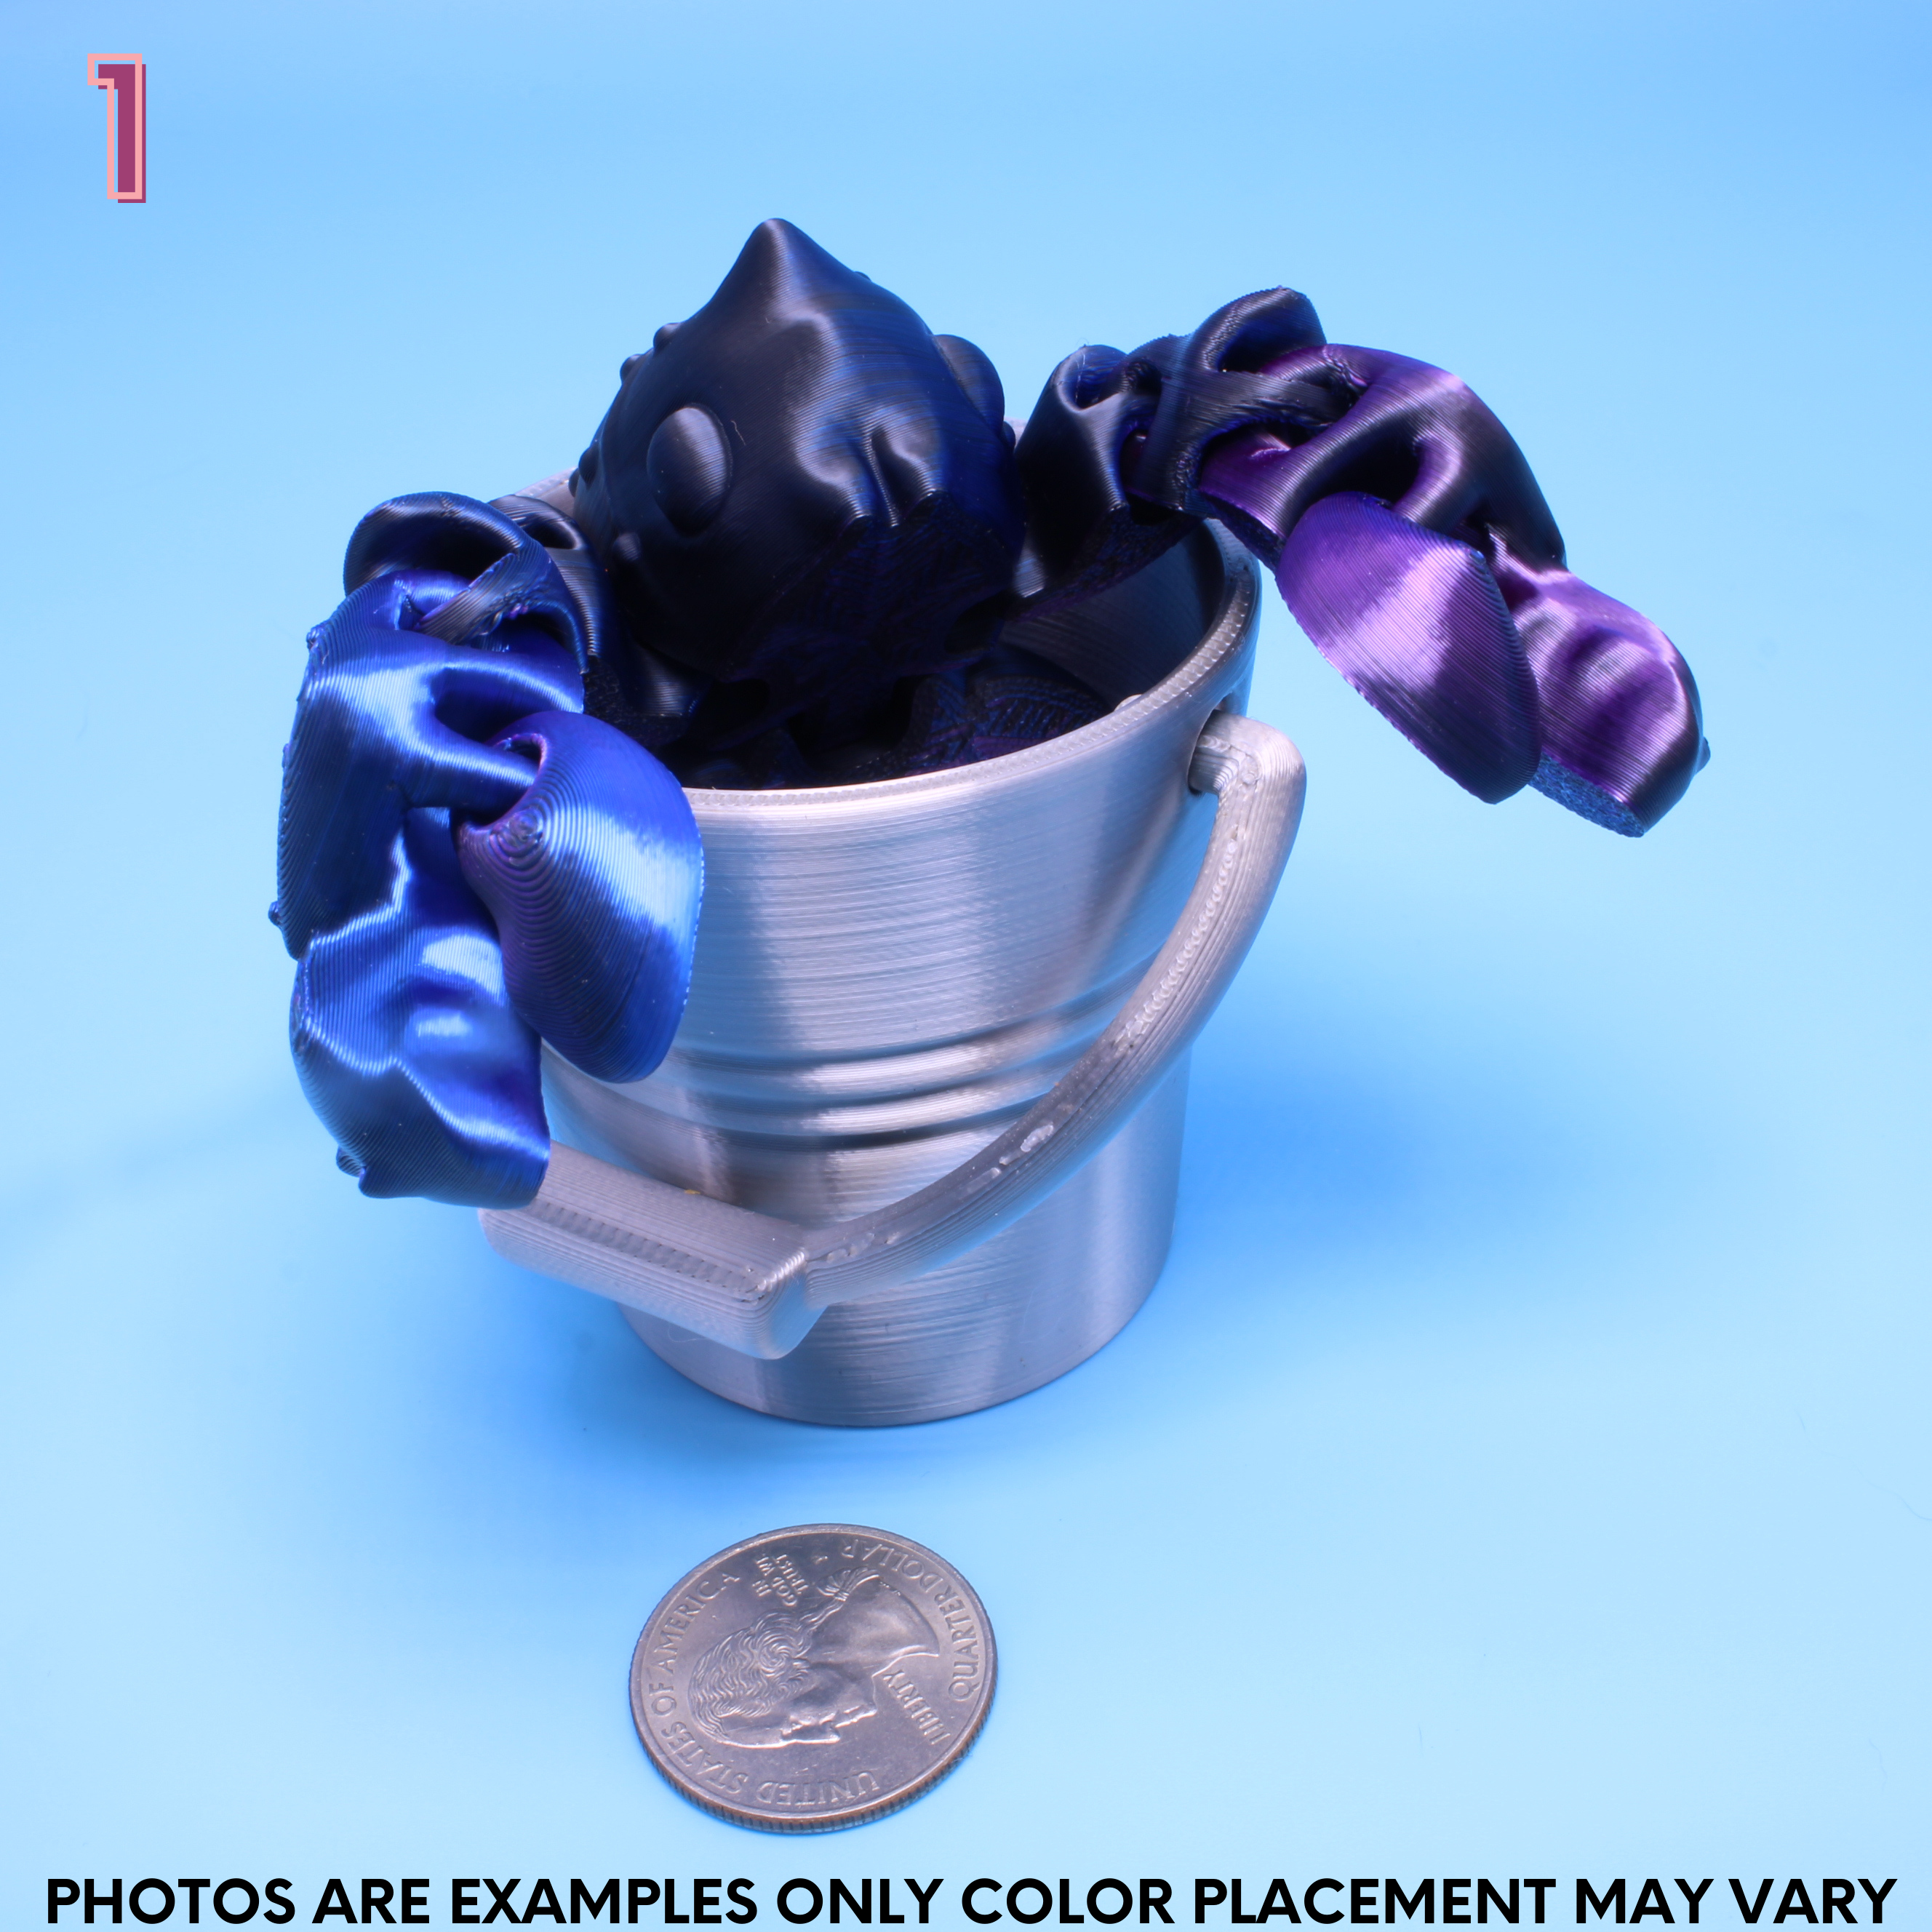 black, blue, purple lobster in a silver bucket